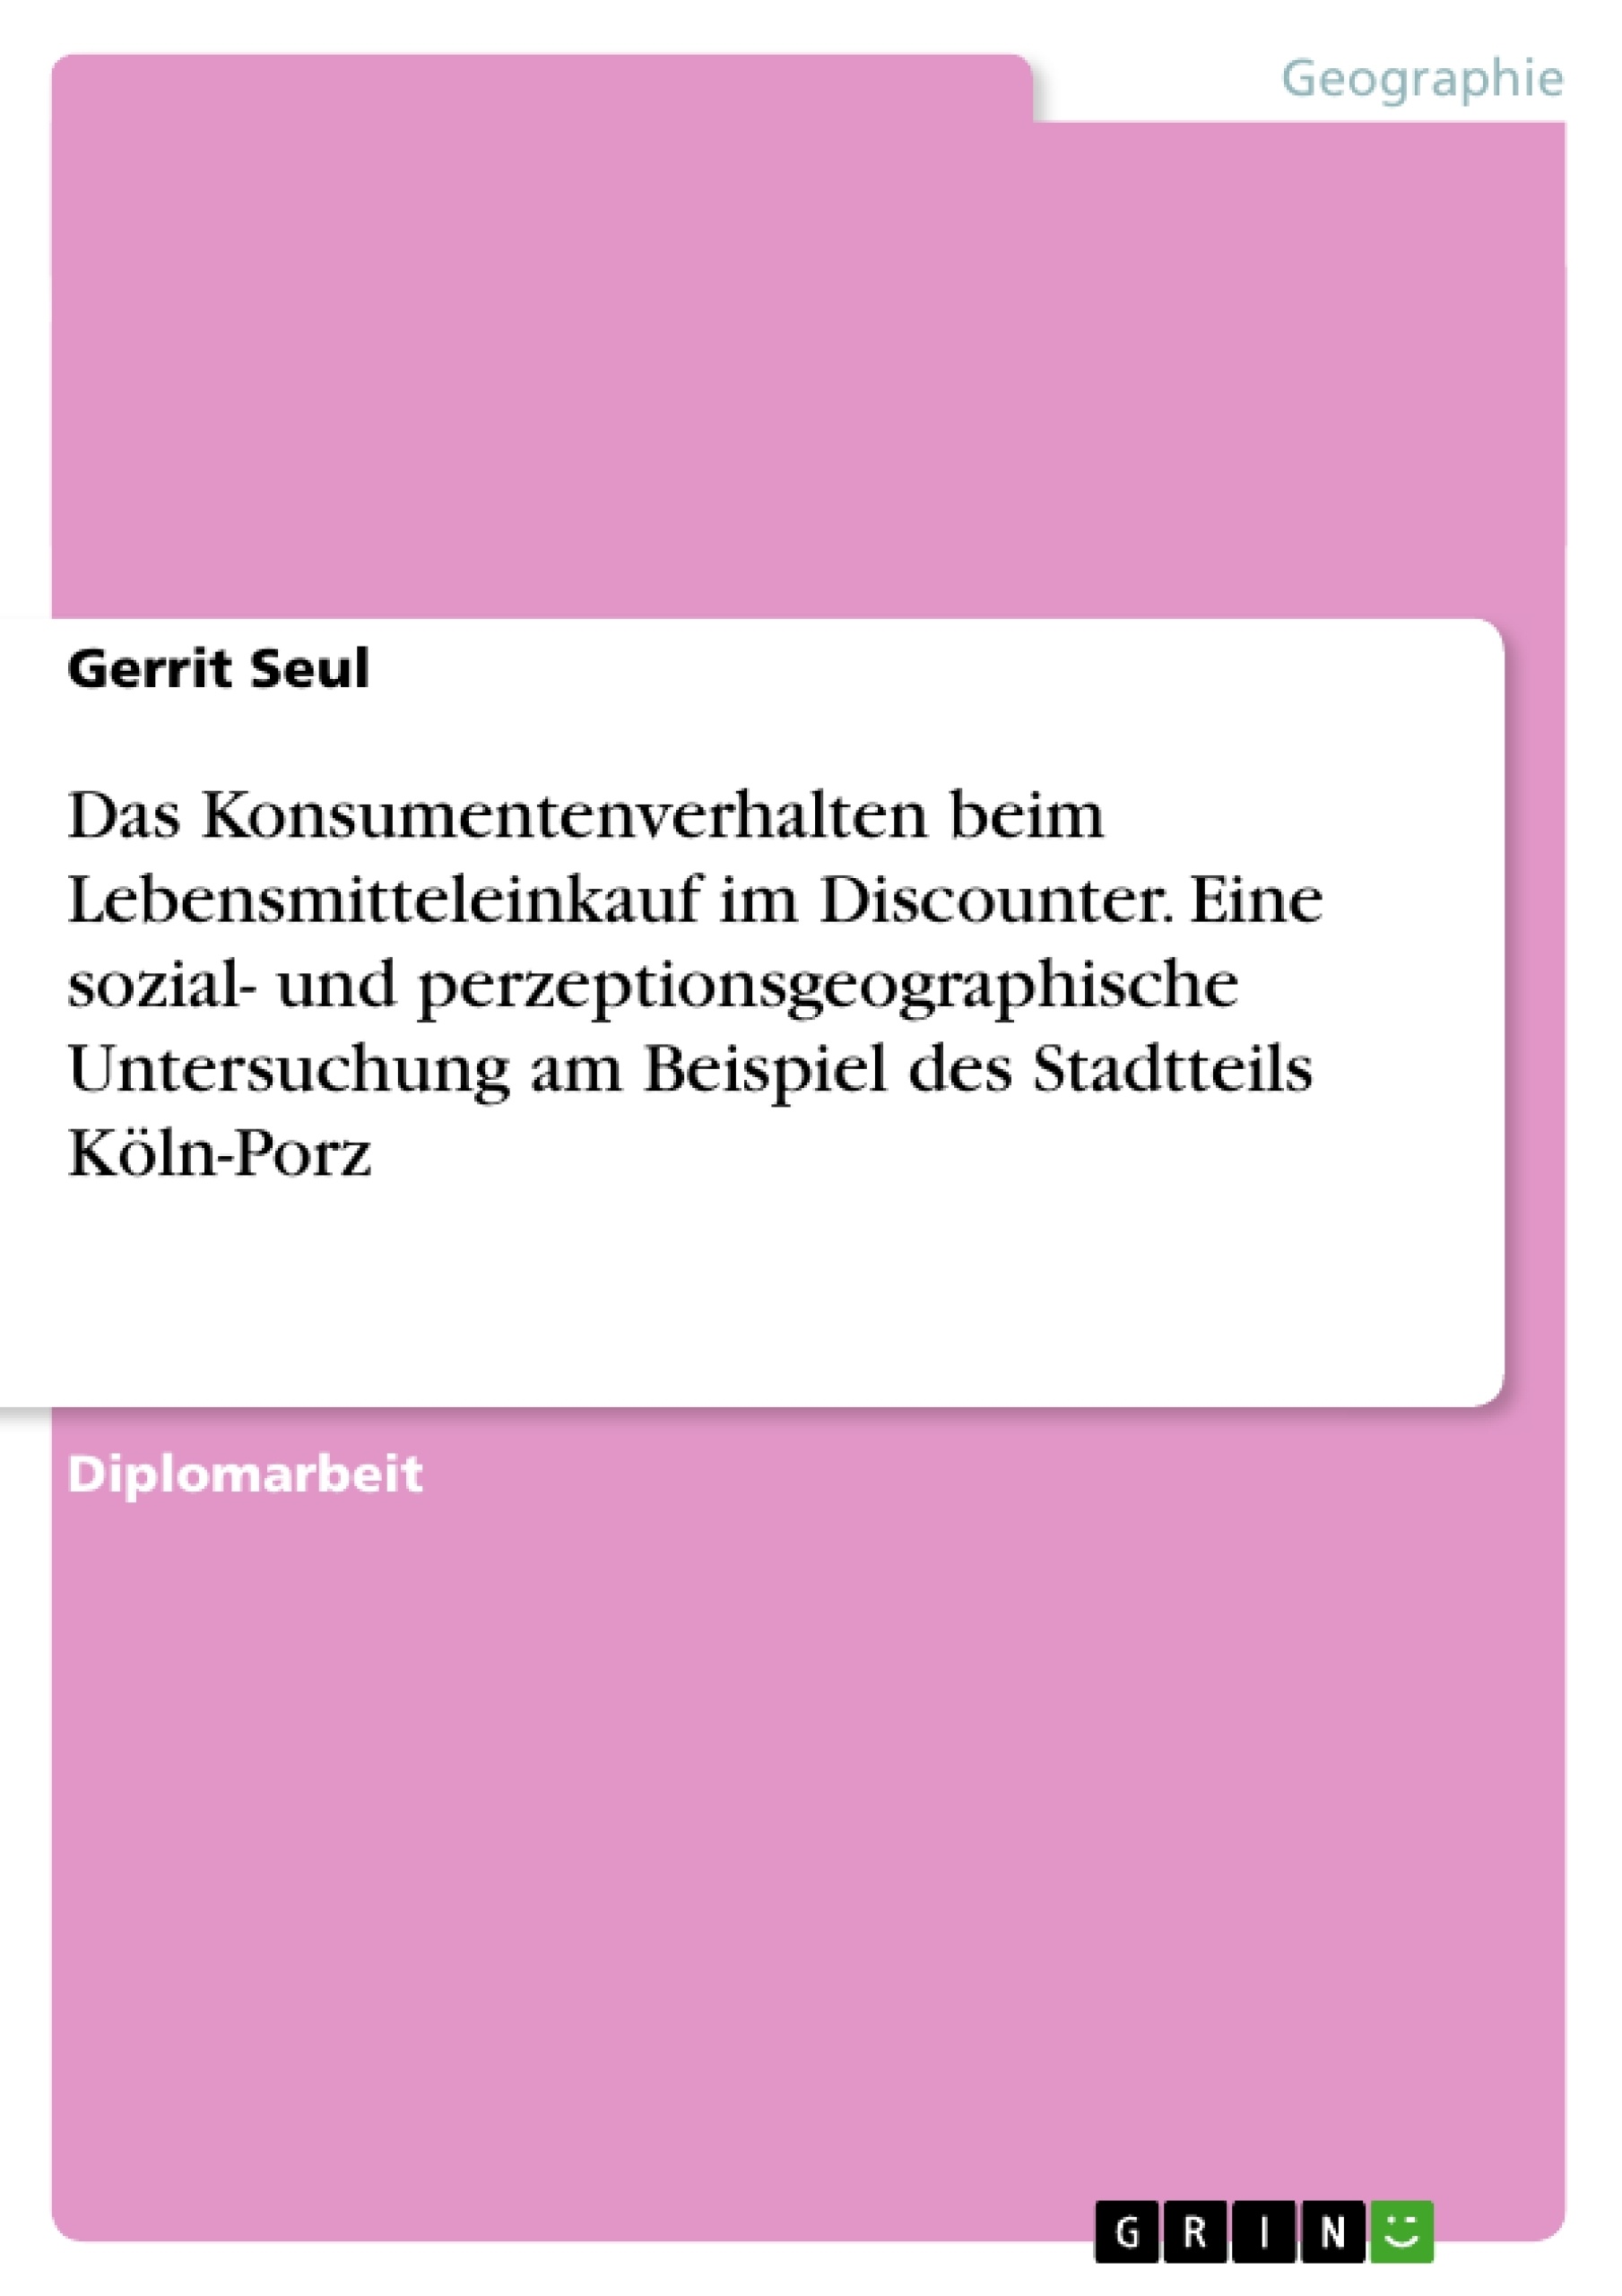 Título: Das Konsumentenverhalten beim Lebensmitteleinkauf im Discounter. Eine sozial- und perzeptionsgeographische Untersuchung am Beispiel des Stadtteils Köln-Porz